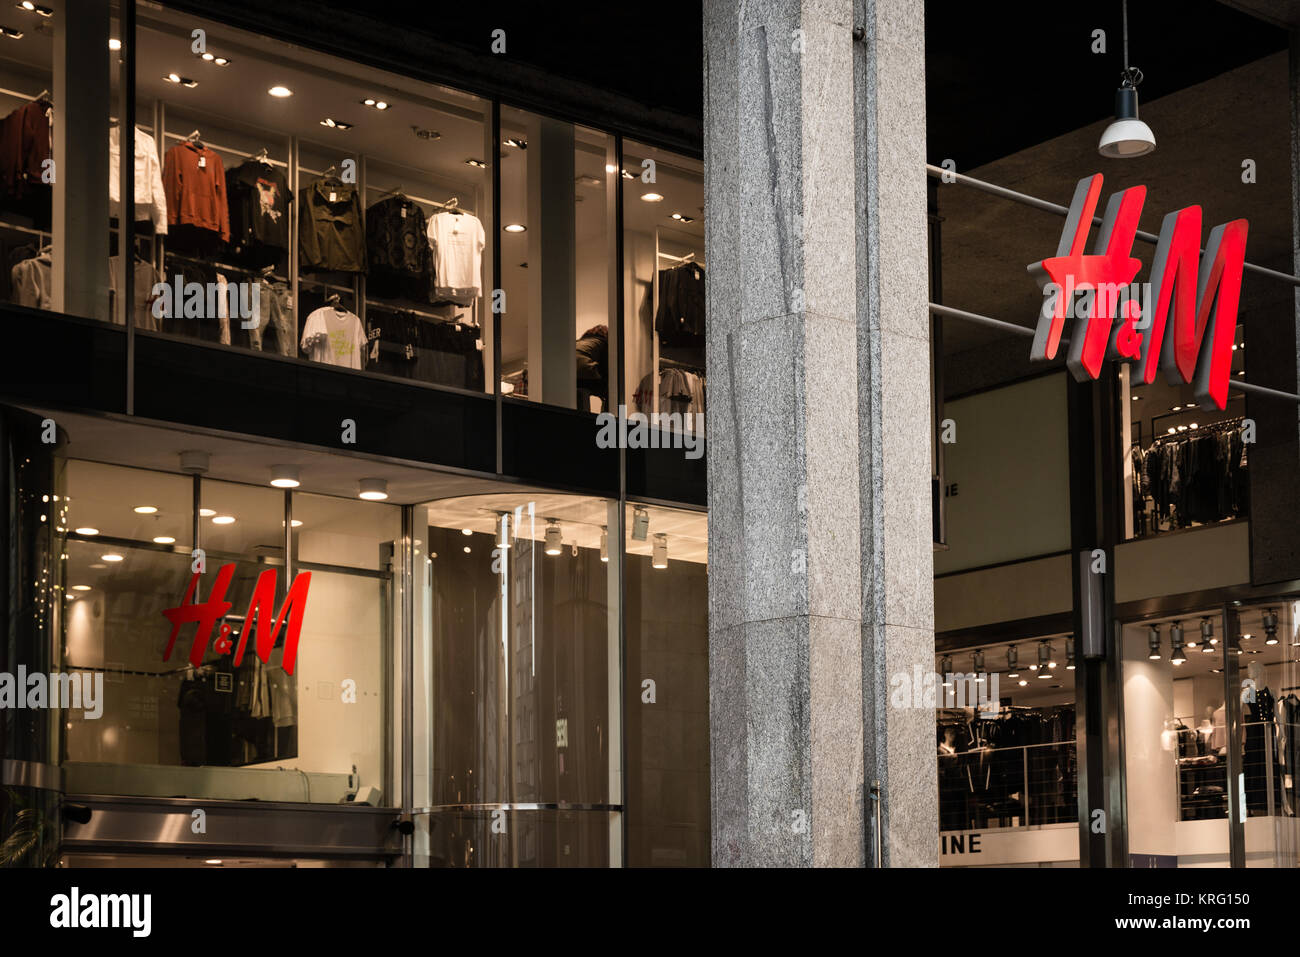 Mailand, Italien - 9. Oktober 2016: Schaufenster und Eingang eines H&M-shop  in Mailand, Italien. Wenige Tage nach der Mailänder Modewoche. Herbst  Winter 2017 Sammlung Stockfotografie - Alamy